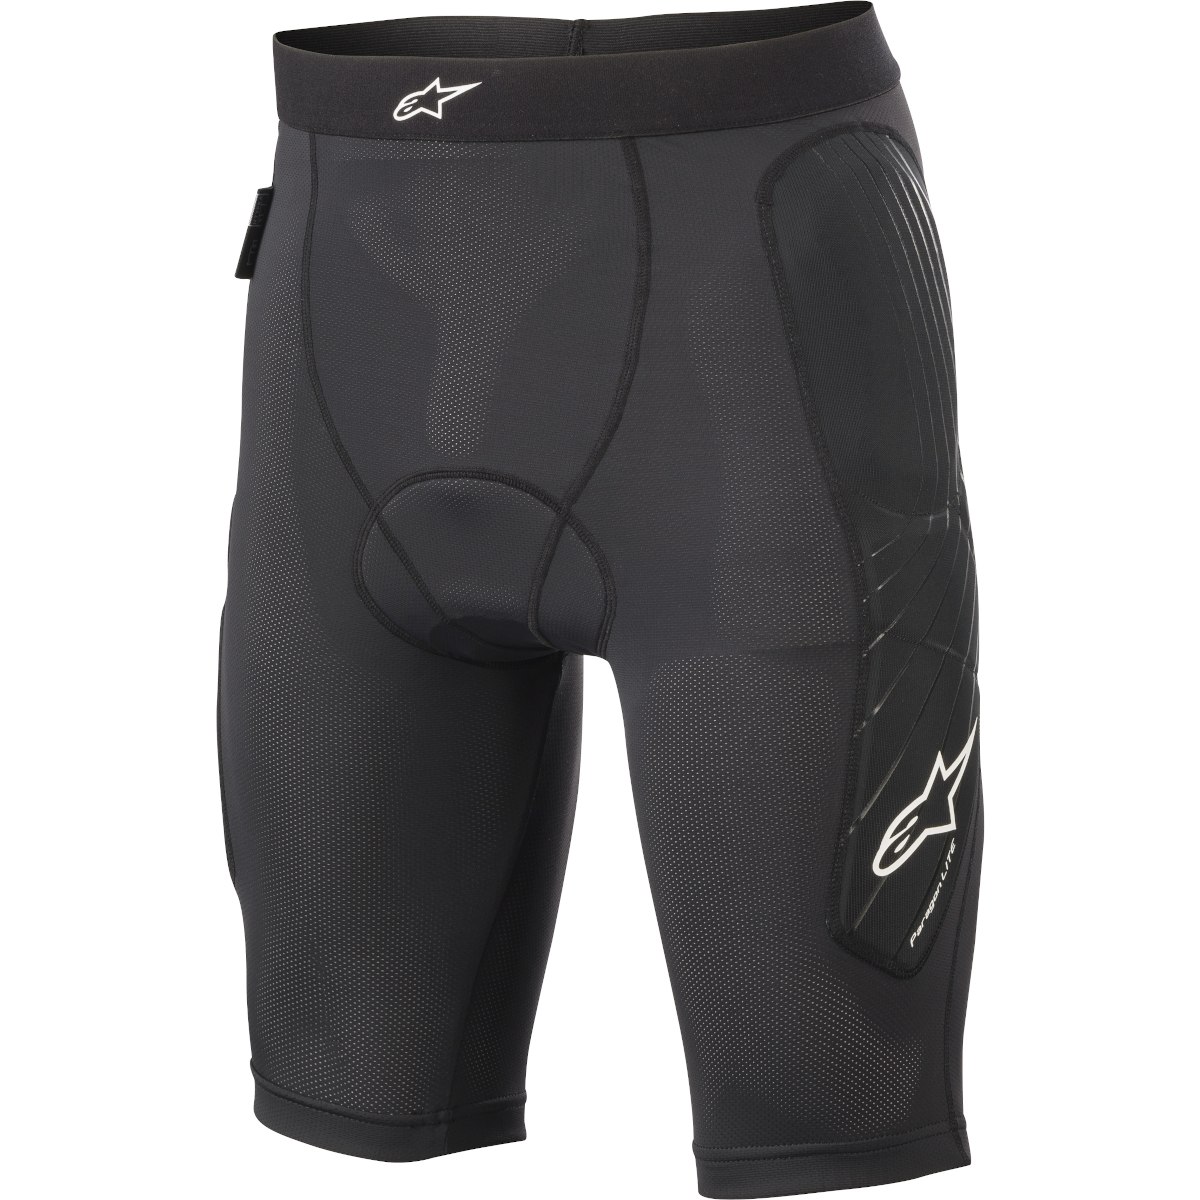 Produktbild von Alpinestars Paragon Lite Protektor Shorts - schwarz